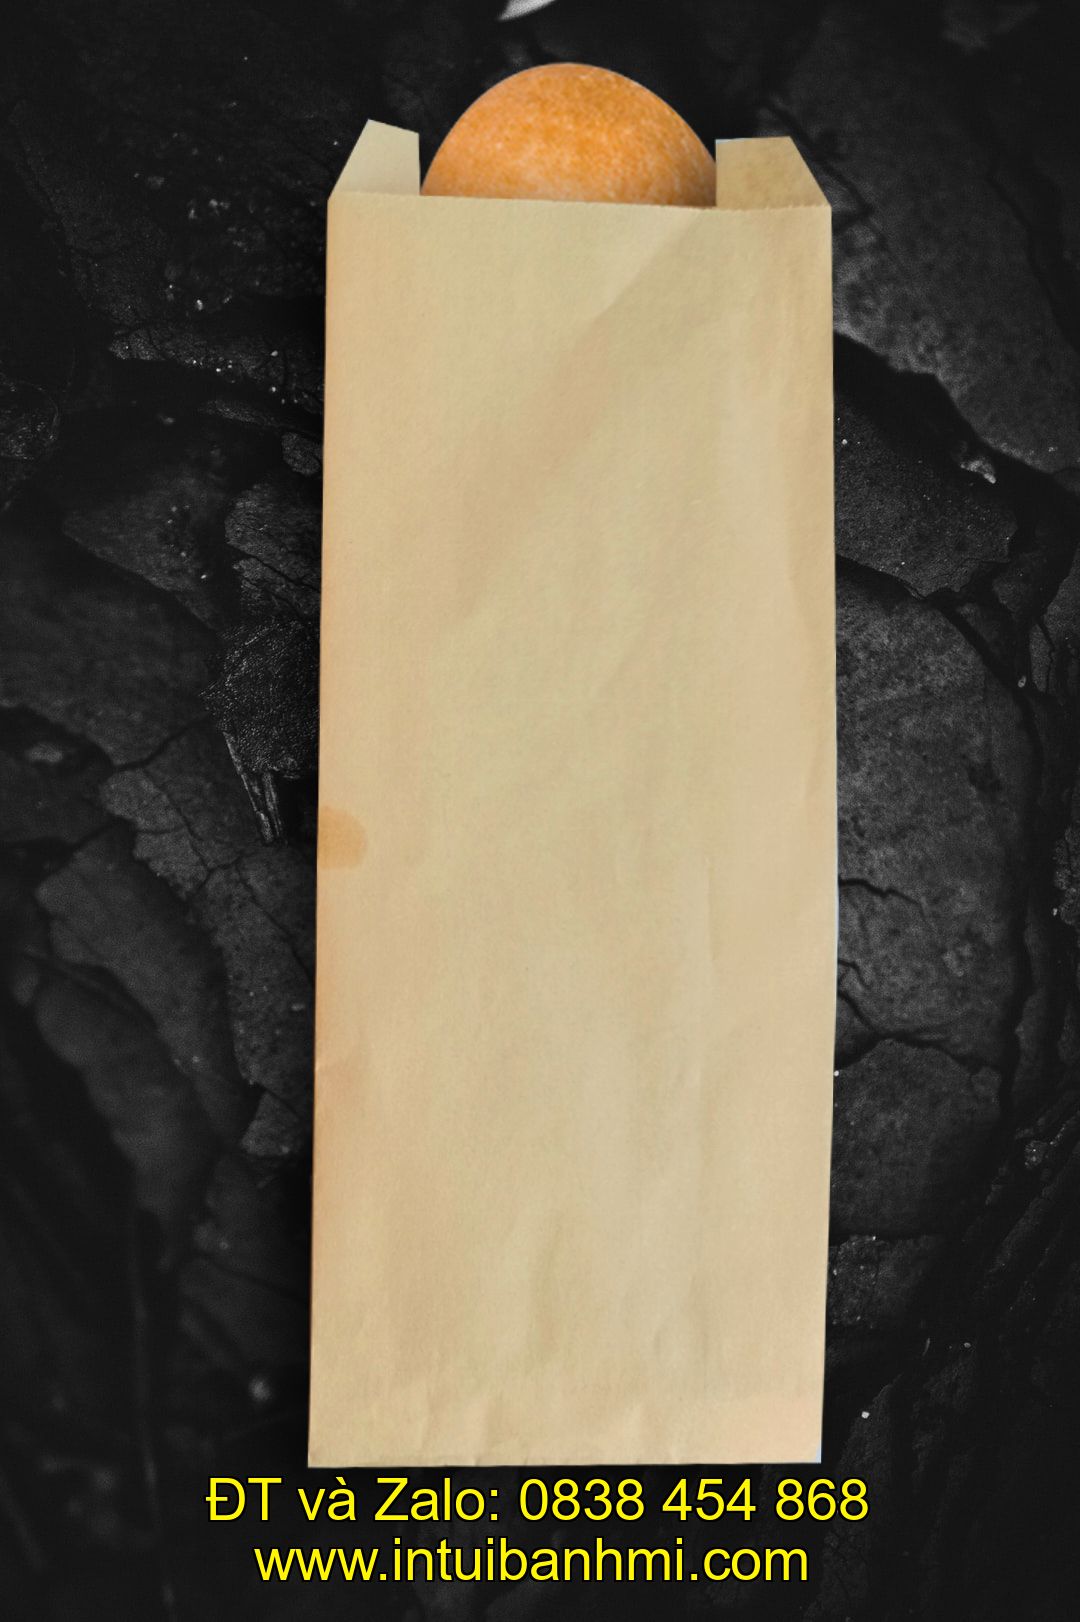 Các ưu điểm của túi giấy đựng bánh mì